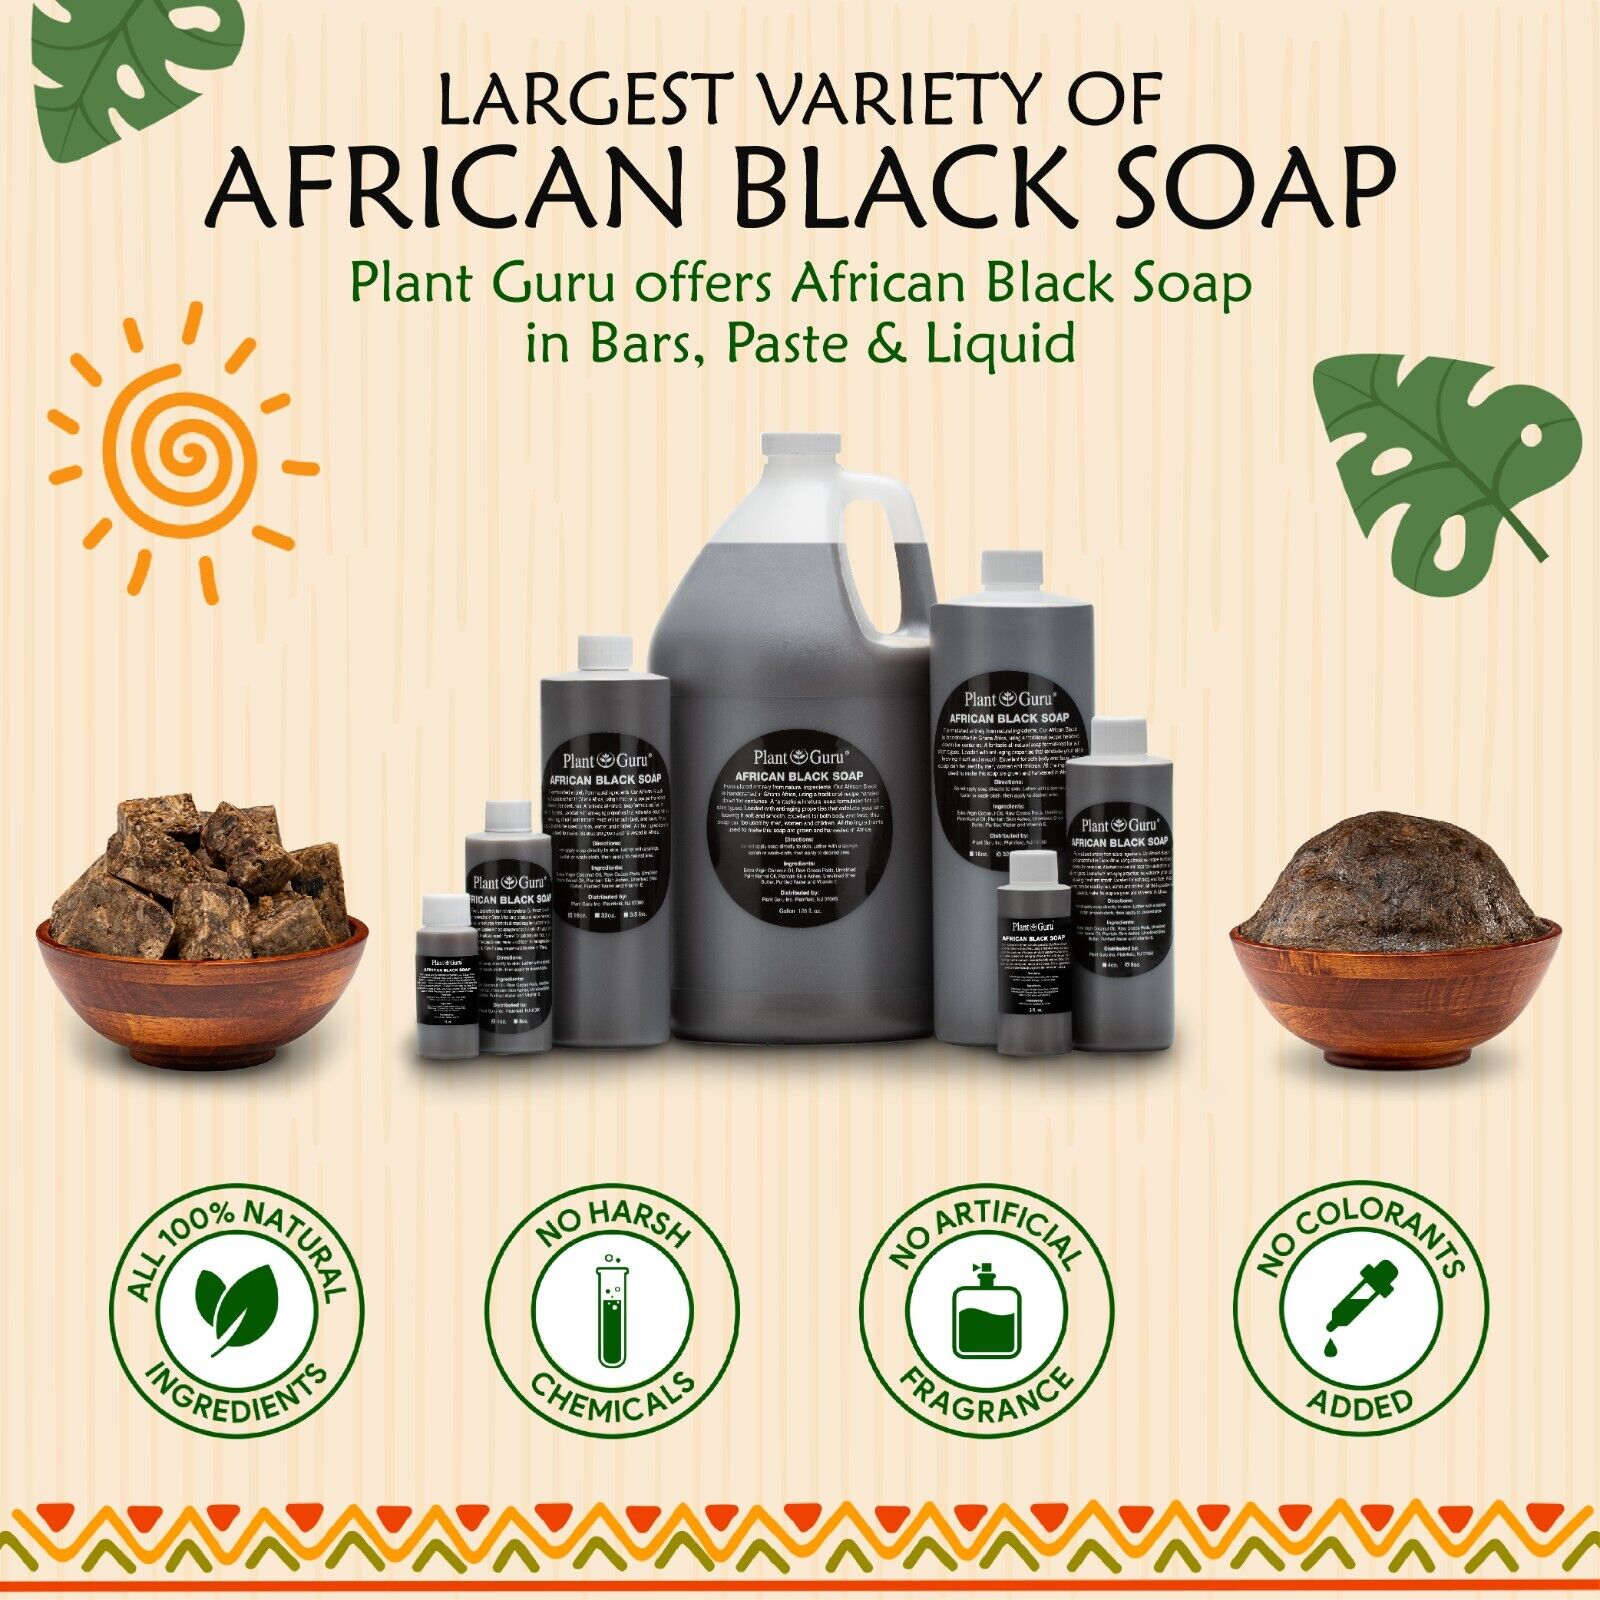 Raw African Black Soap Liquid 100% Pure Organic Natural Bath Body Face Wash Bulk Plant Guru - фотография #7